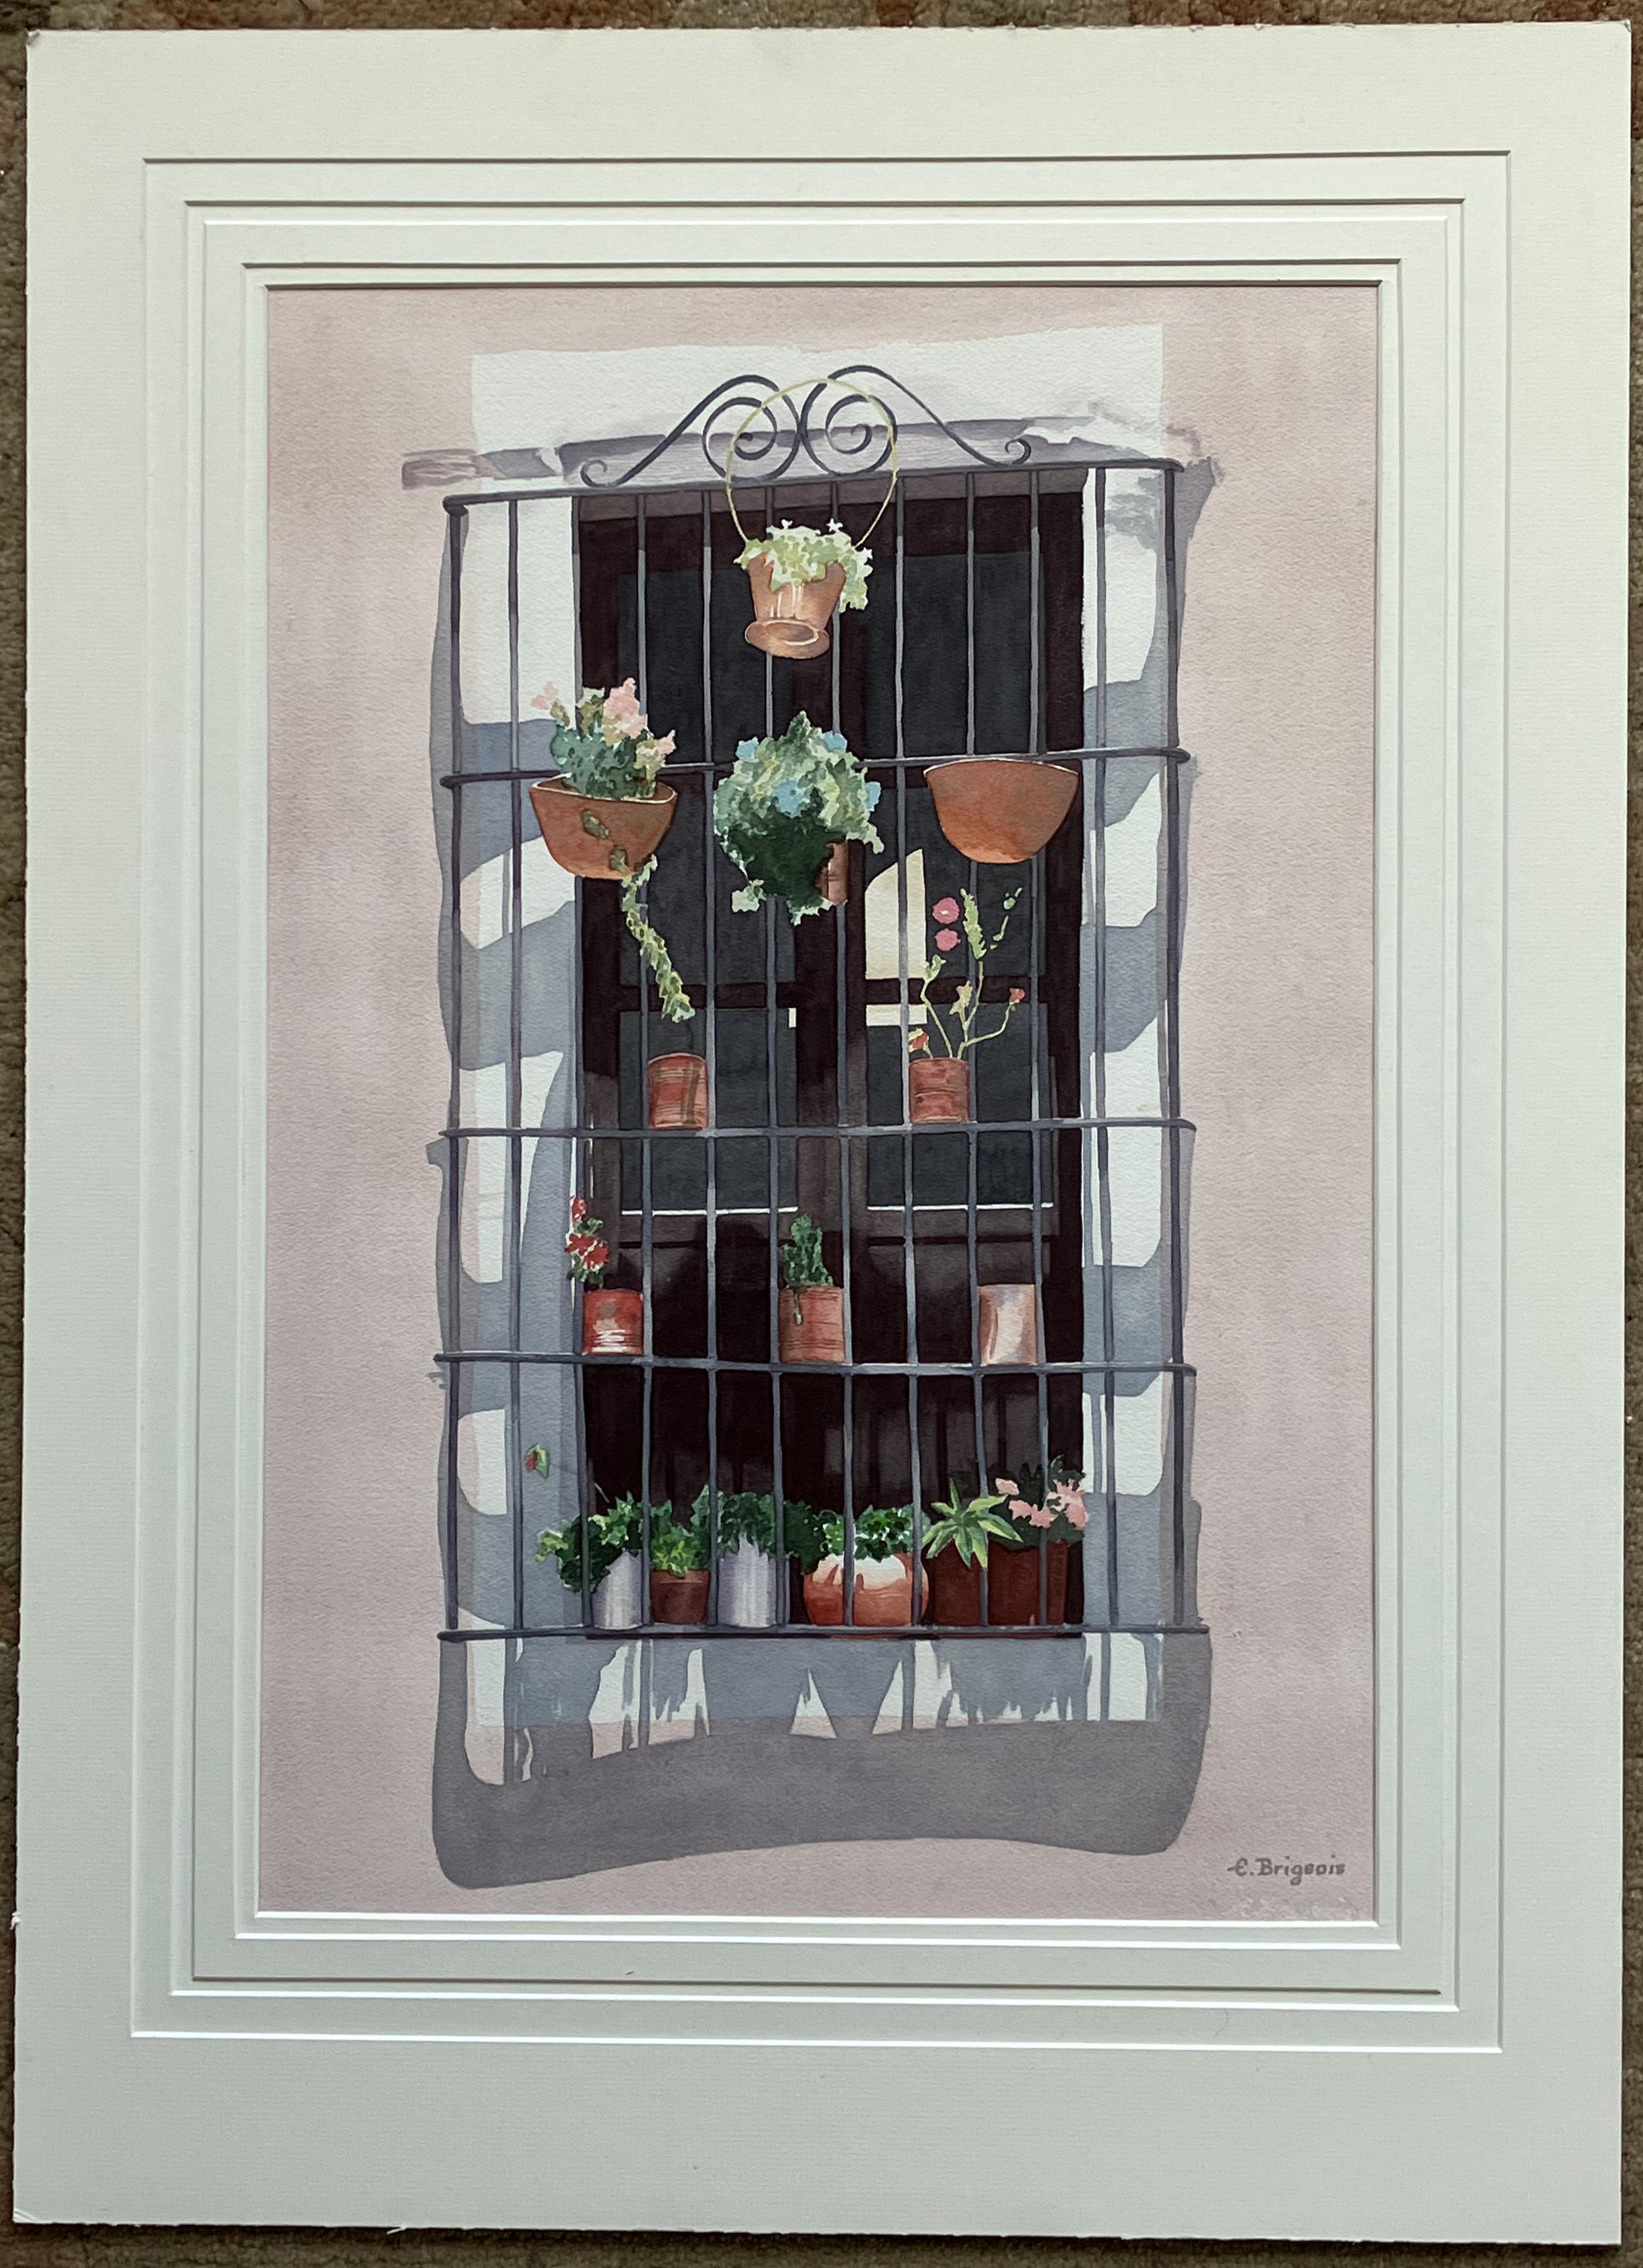 Guanajuato-Fenster – Painting von Evelyne Brigeois